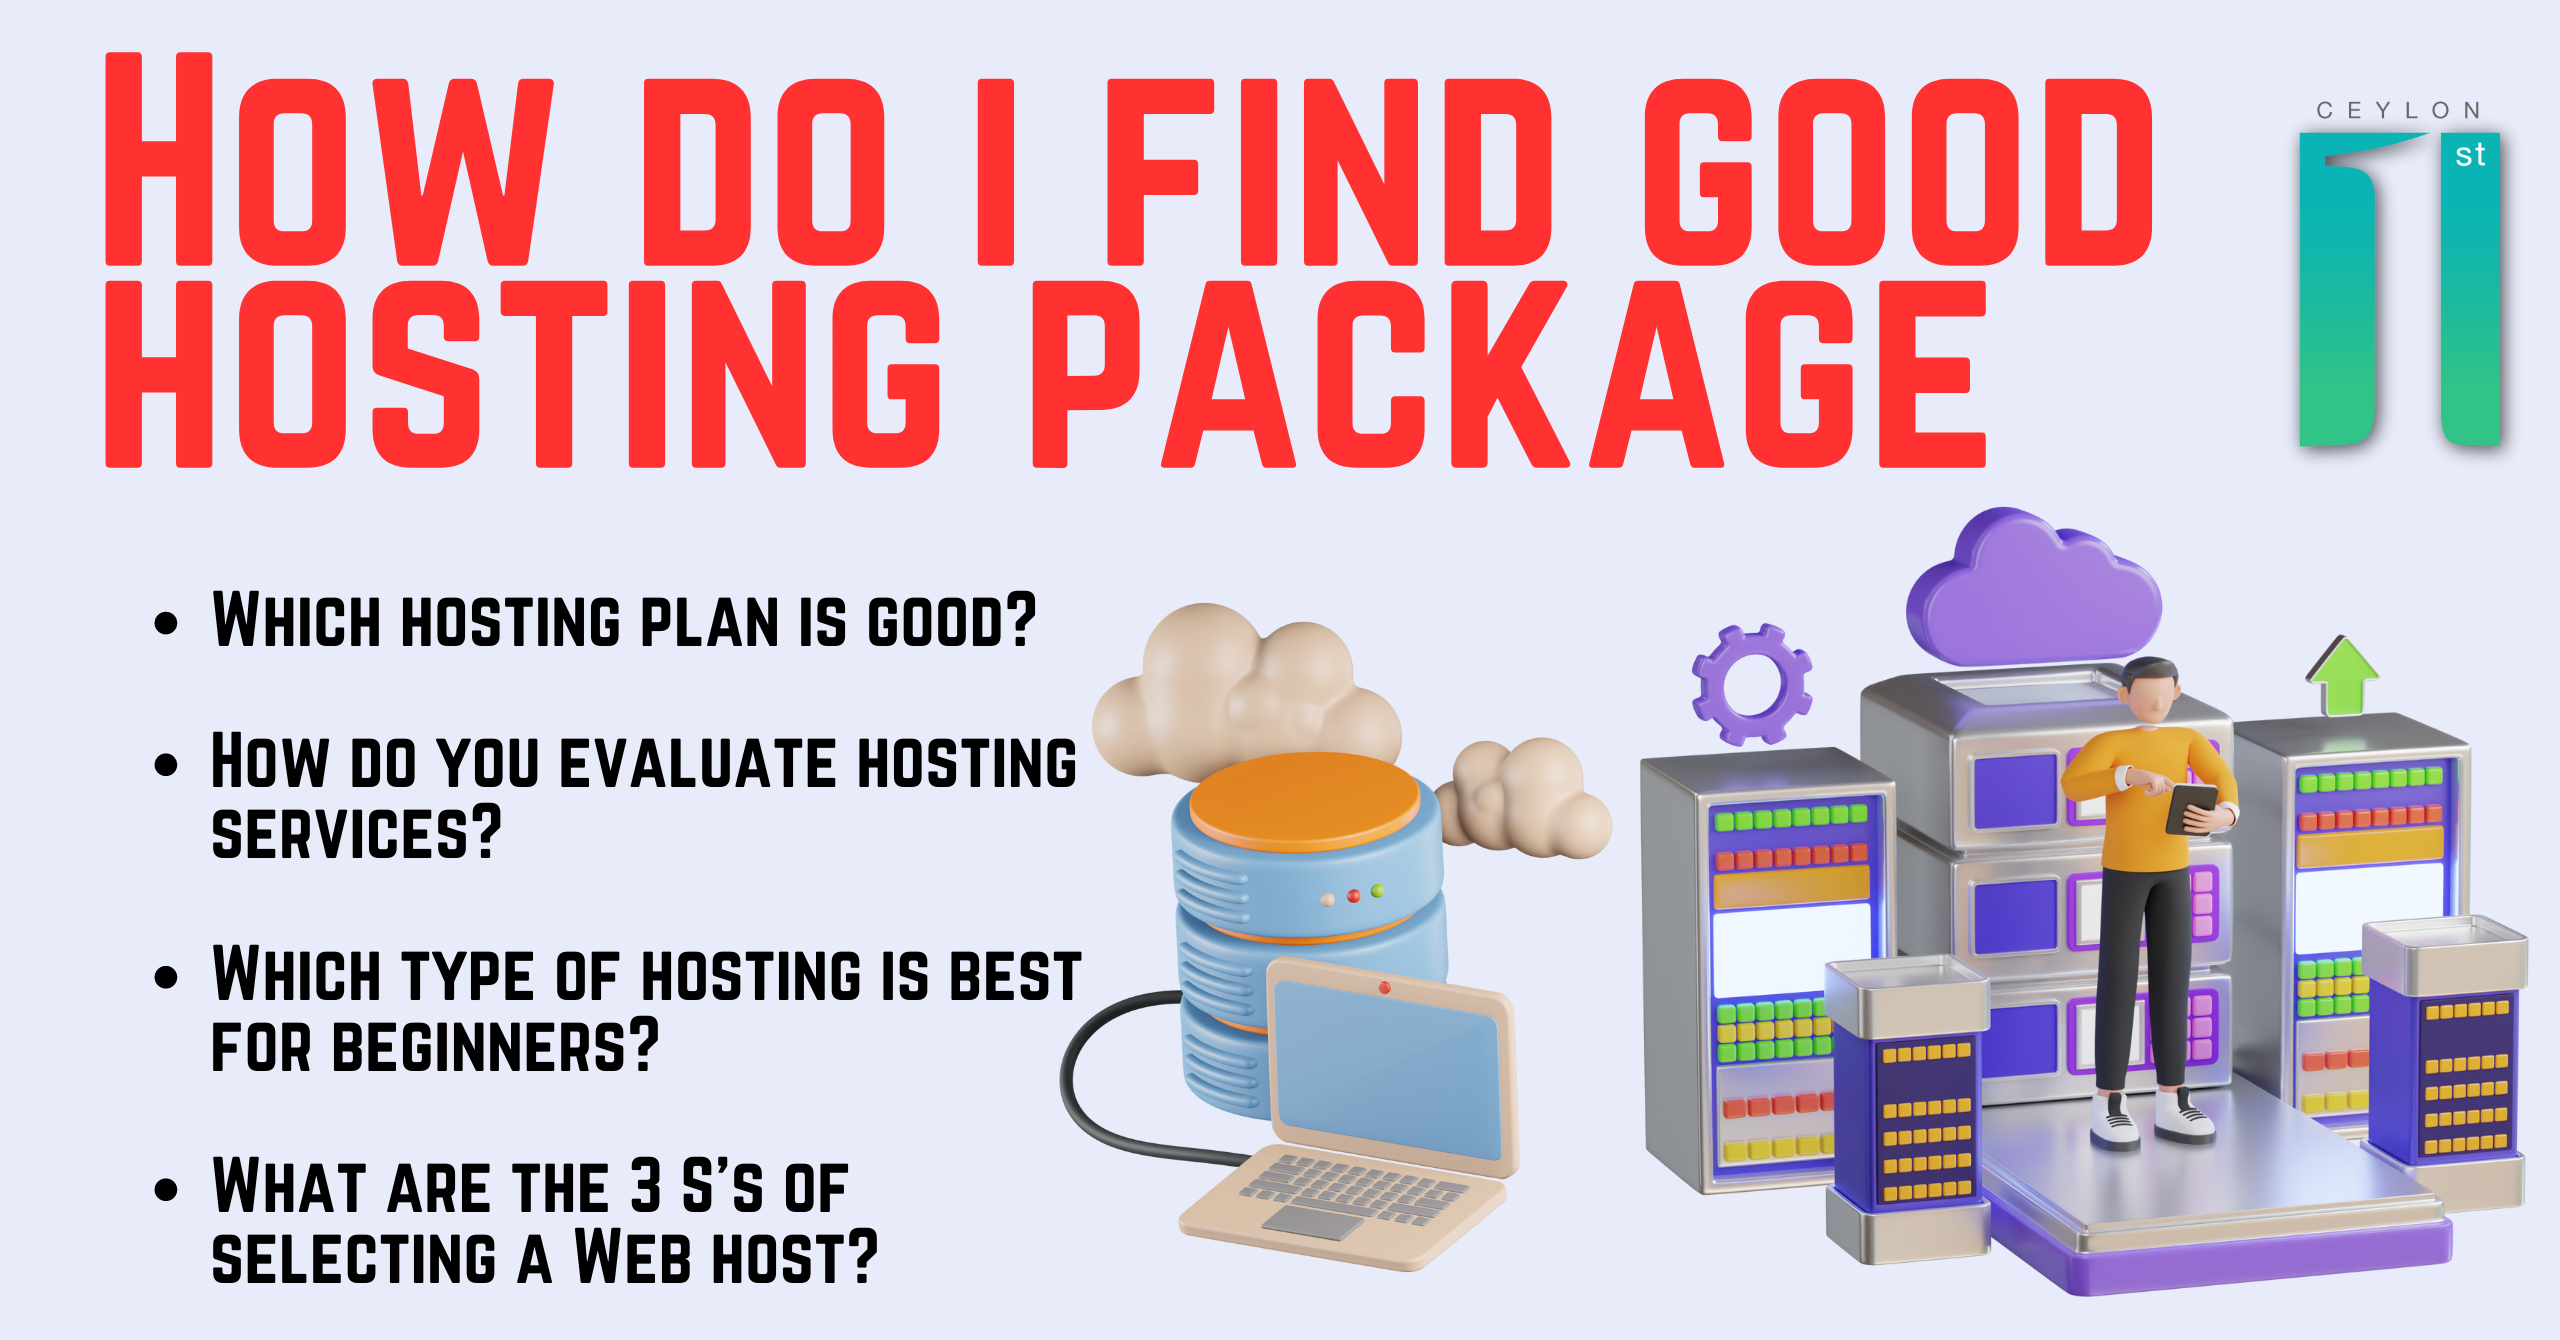 How do i find good hosting package